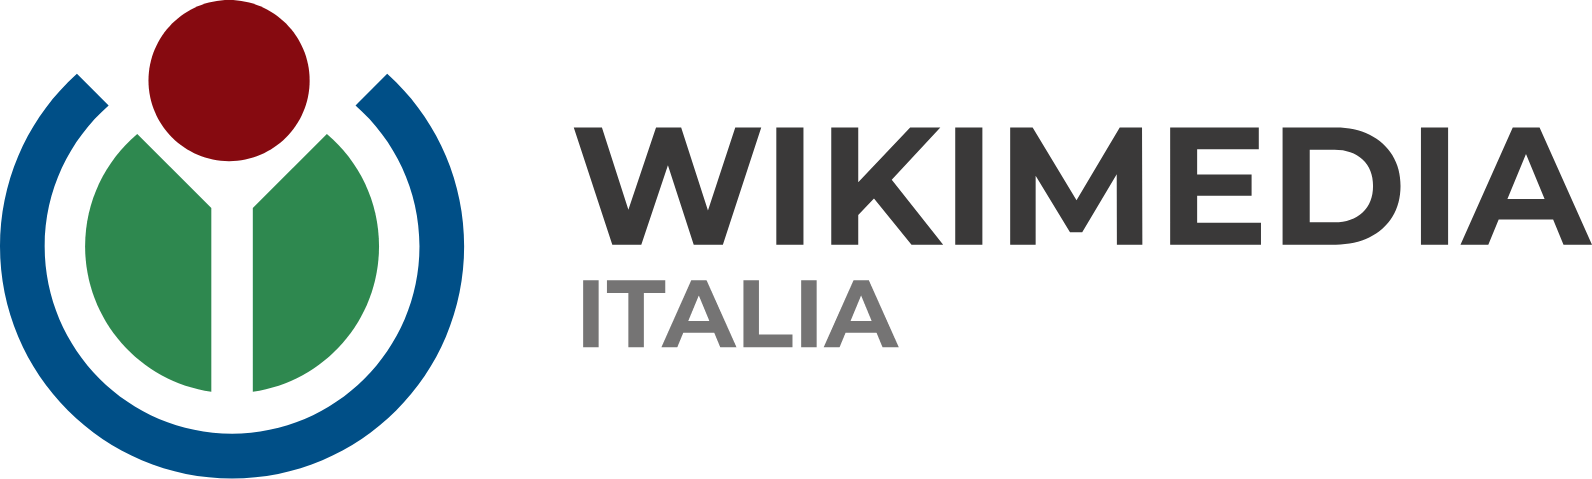 Regala Wiki